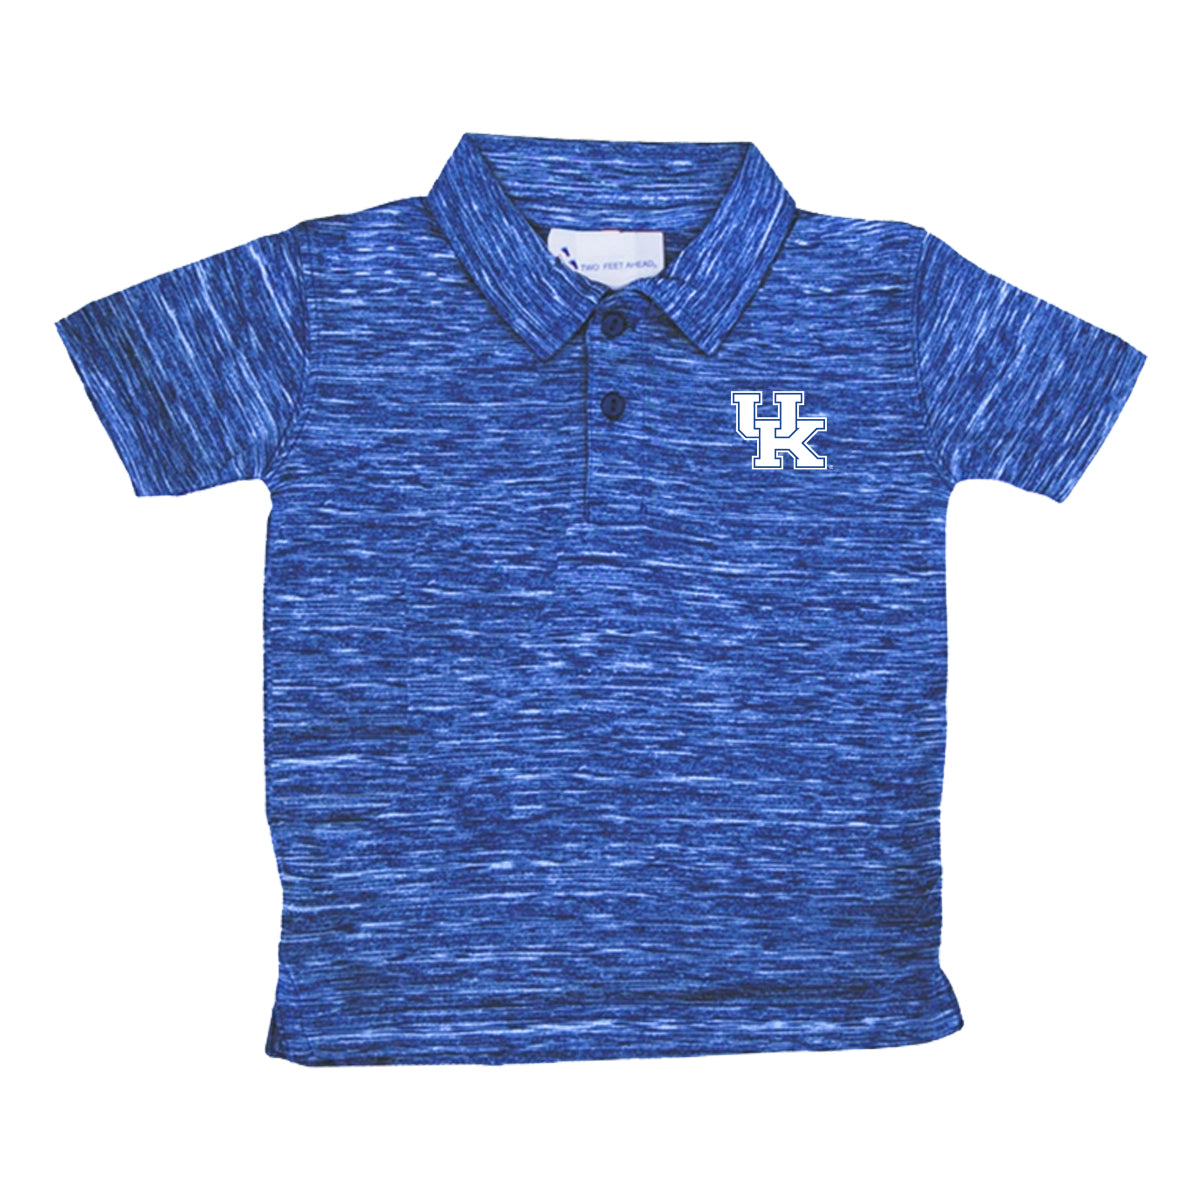 UK Golf Shirt- Toddler